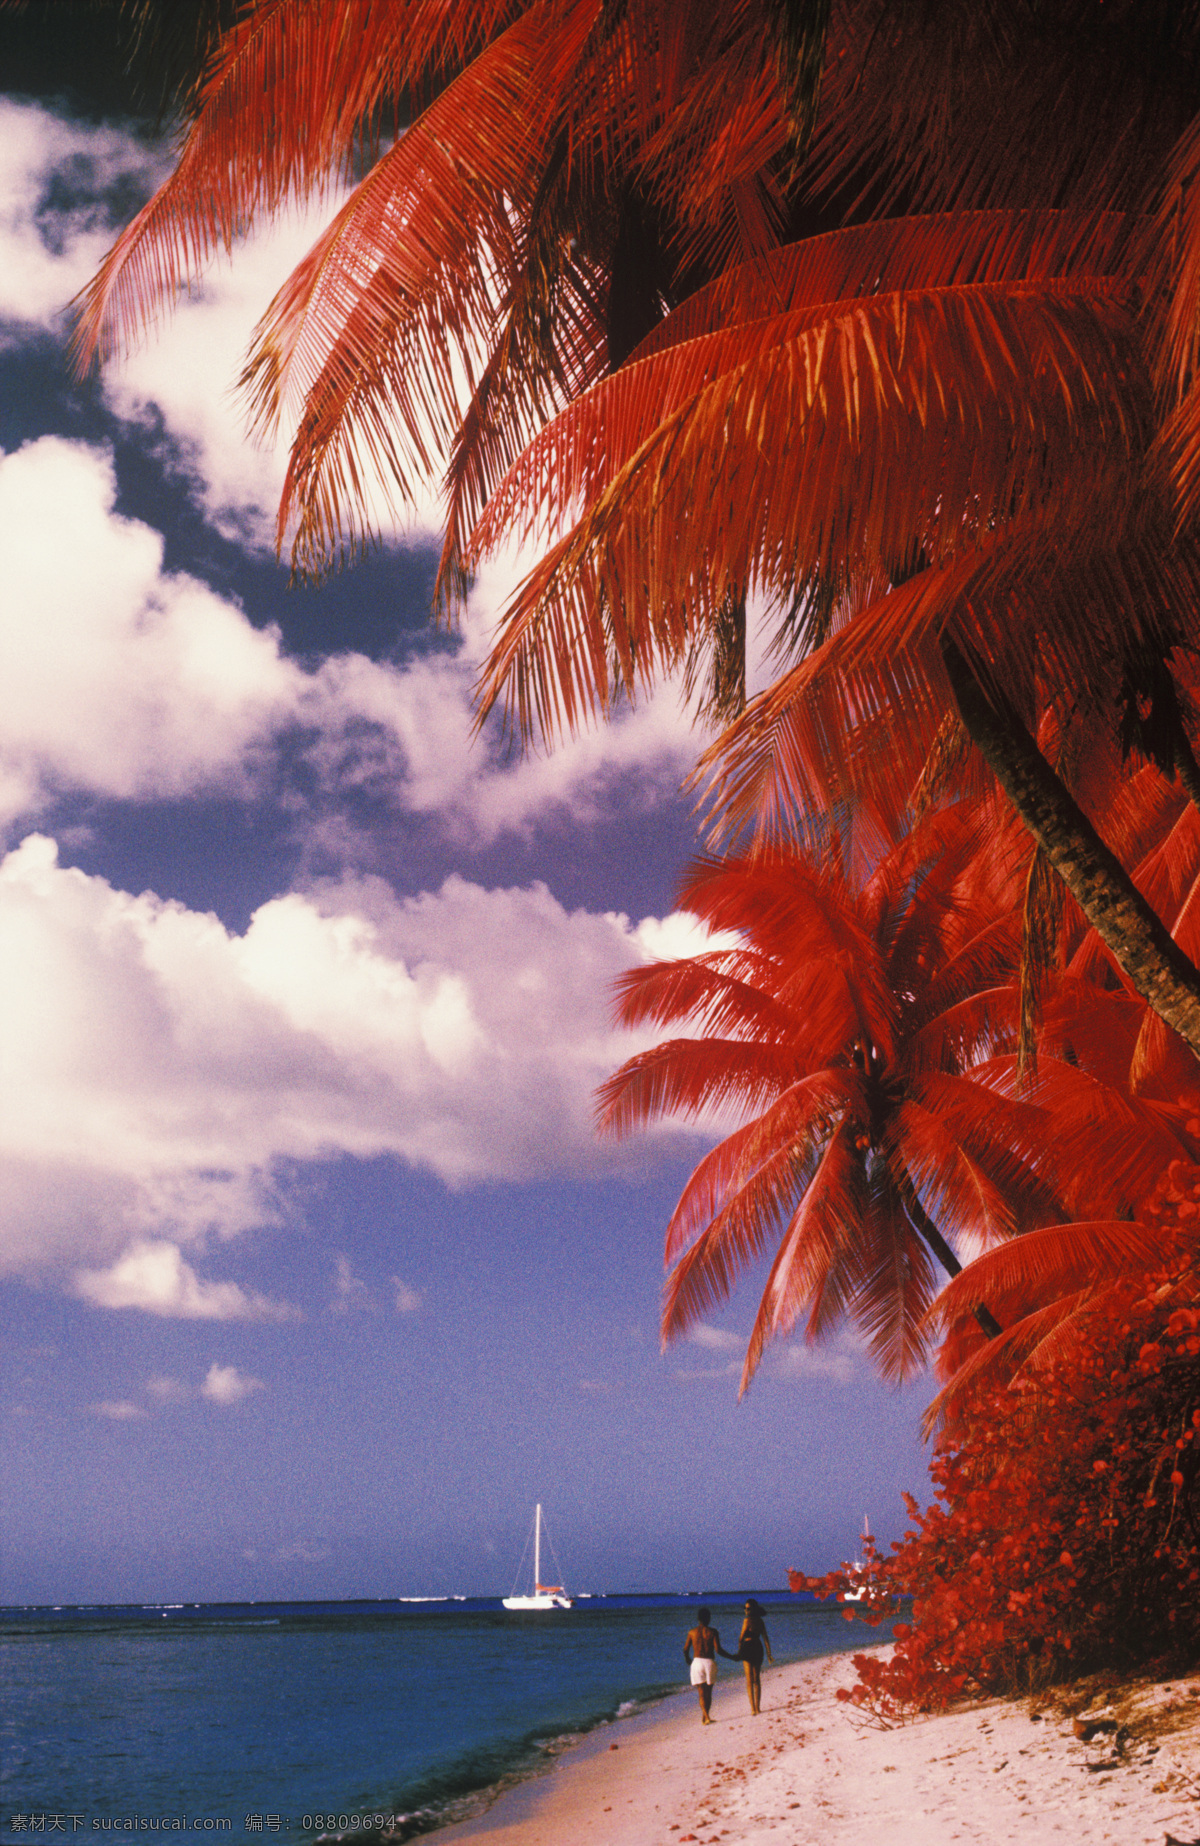 海边 红色 椰子树 大海 漂亮 美景 风景 海岸 岸边 加勒比海岸 高清图片 大海图片 风景图片